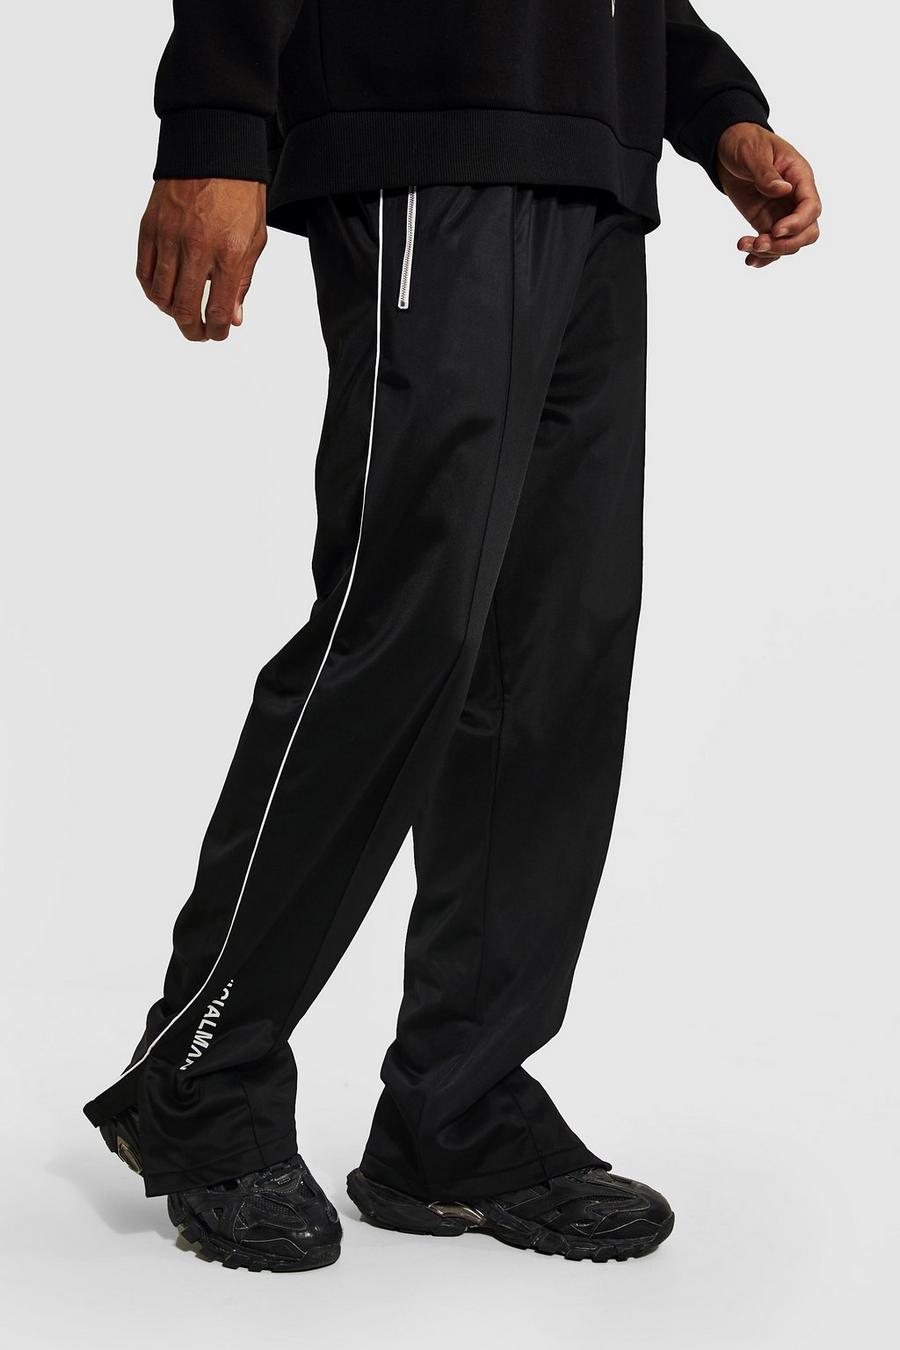 Pantalón Tall MAN Official holgado deportivo de tejido por urdimbre con abertura en el bajo, Black negro